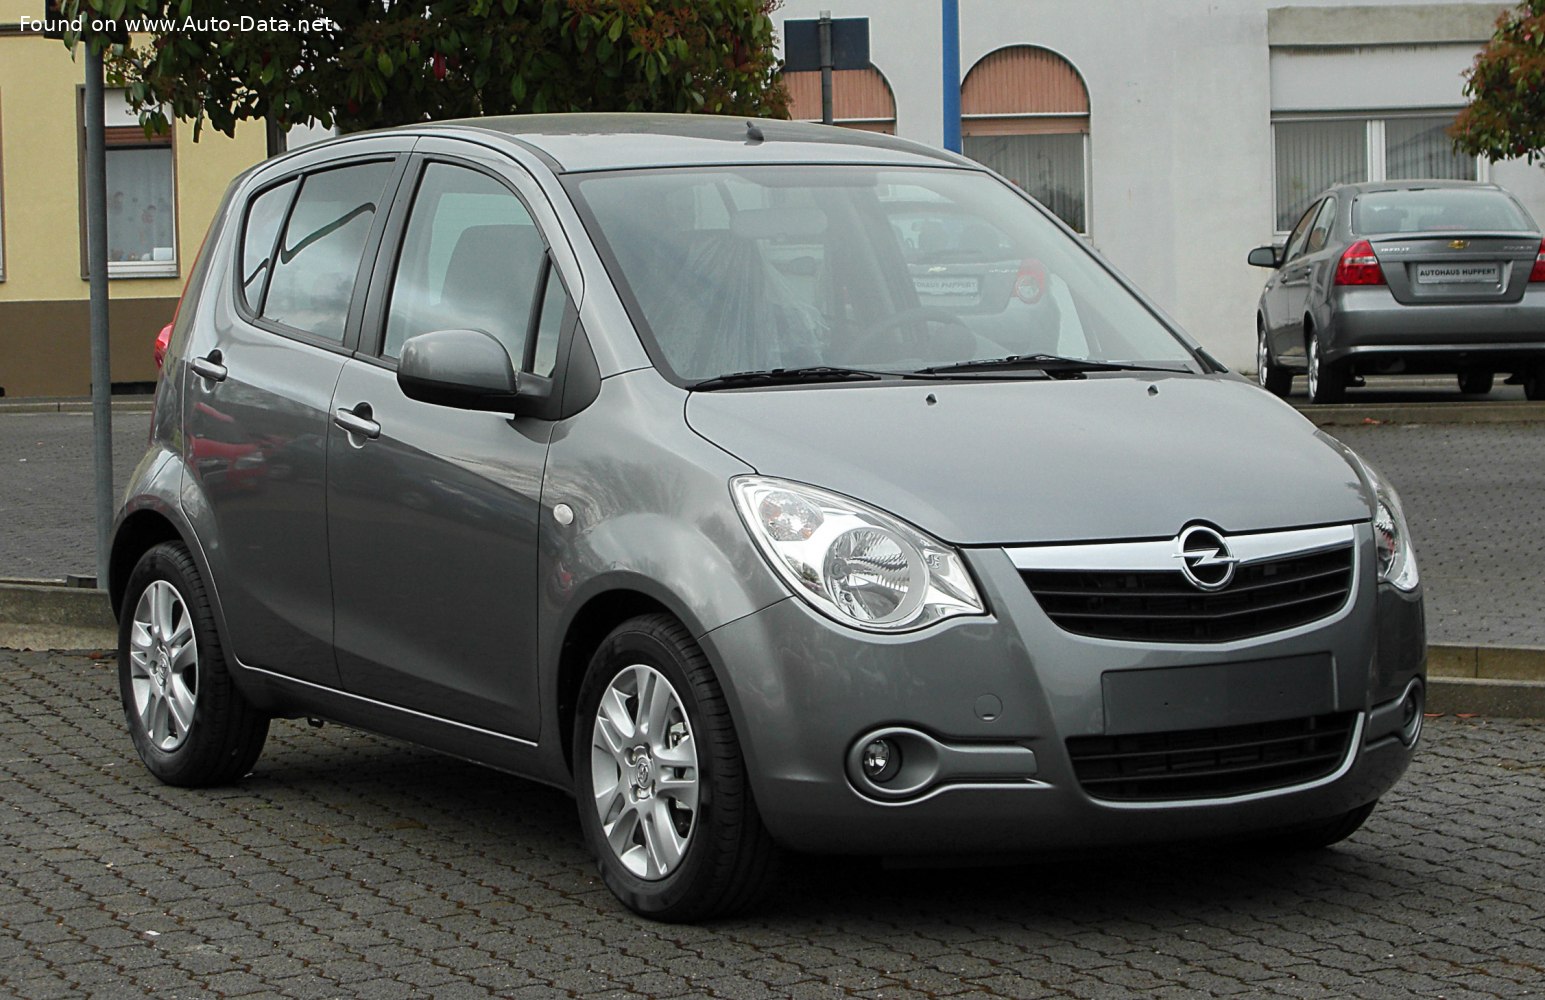 https://www.auto-data.net/images/f129/Opel-Agila-II.jpg